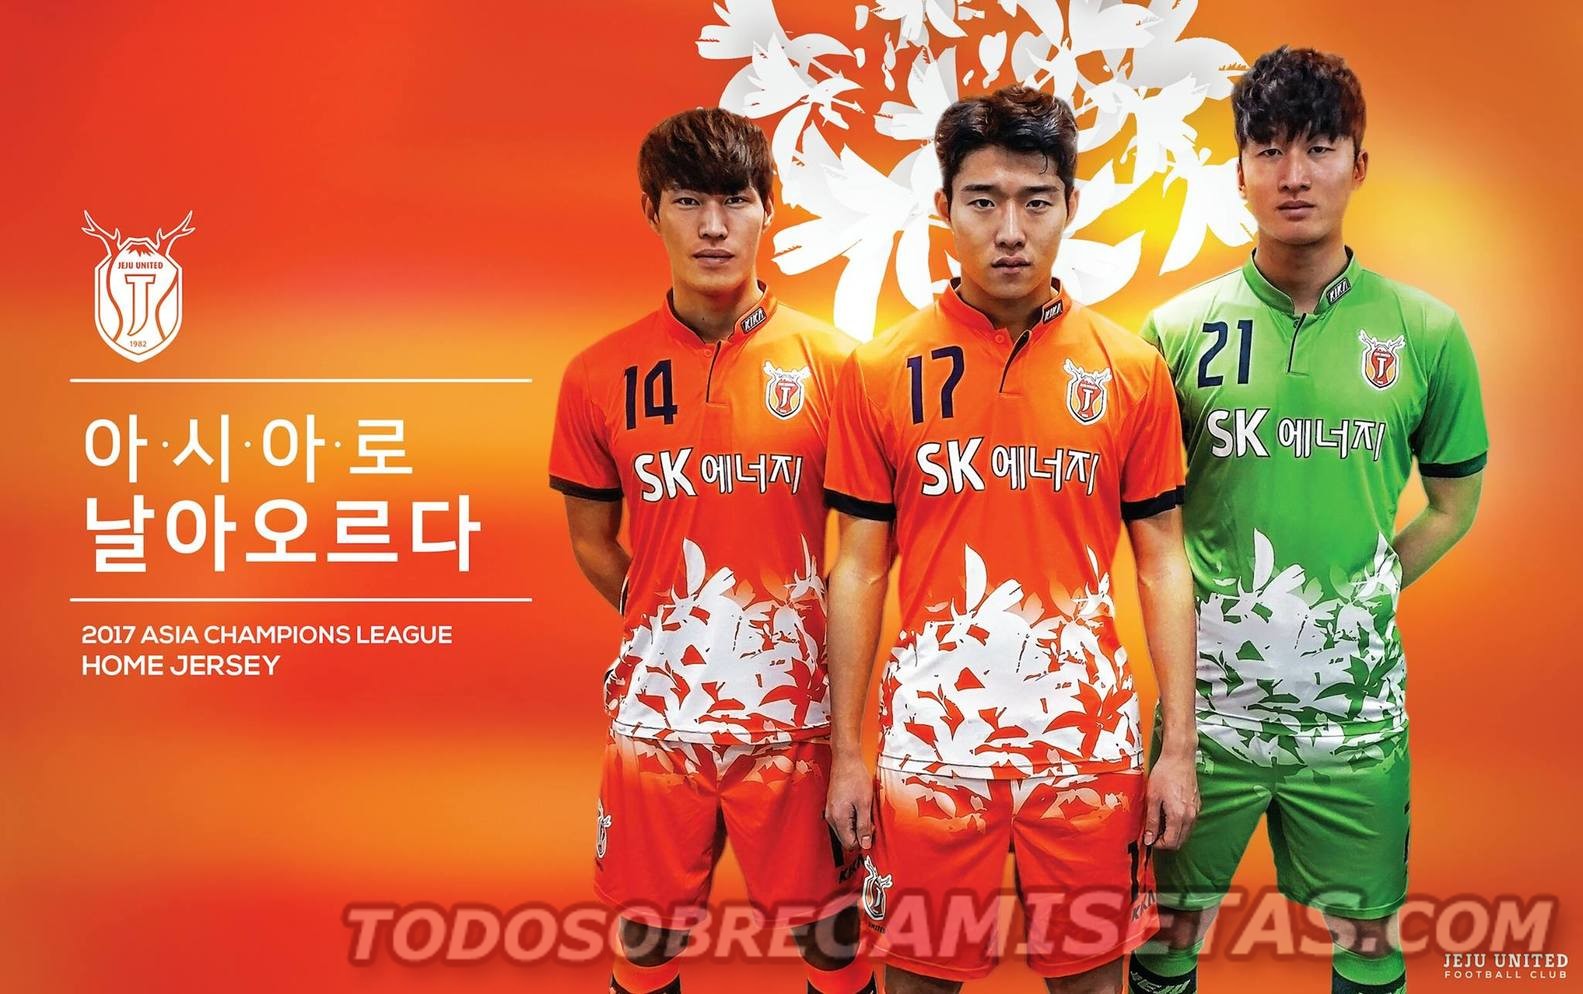 Esta vez pasamos al futbol koreano donde el JEJU UNITED presentó su nueva indumentaria marca Kika con las cuales disputara la Liga K, la primera división de Corea del Sur y la Liga de Campeones de Asia.